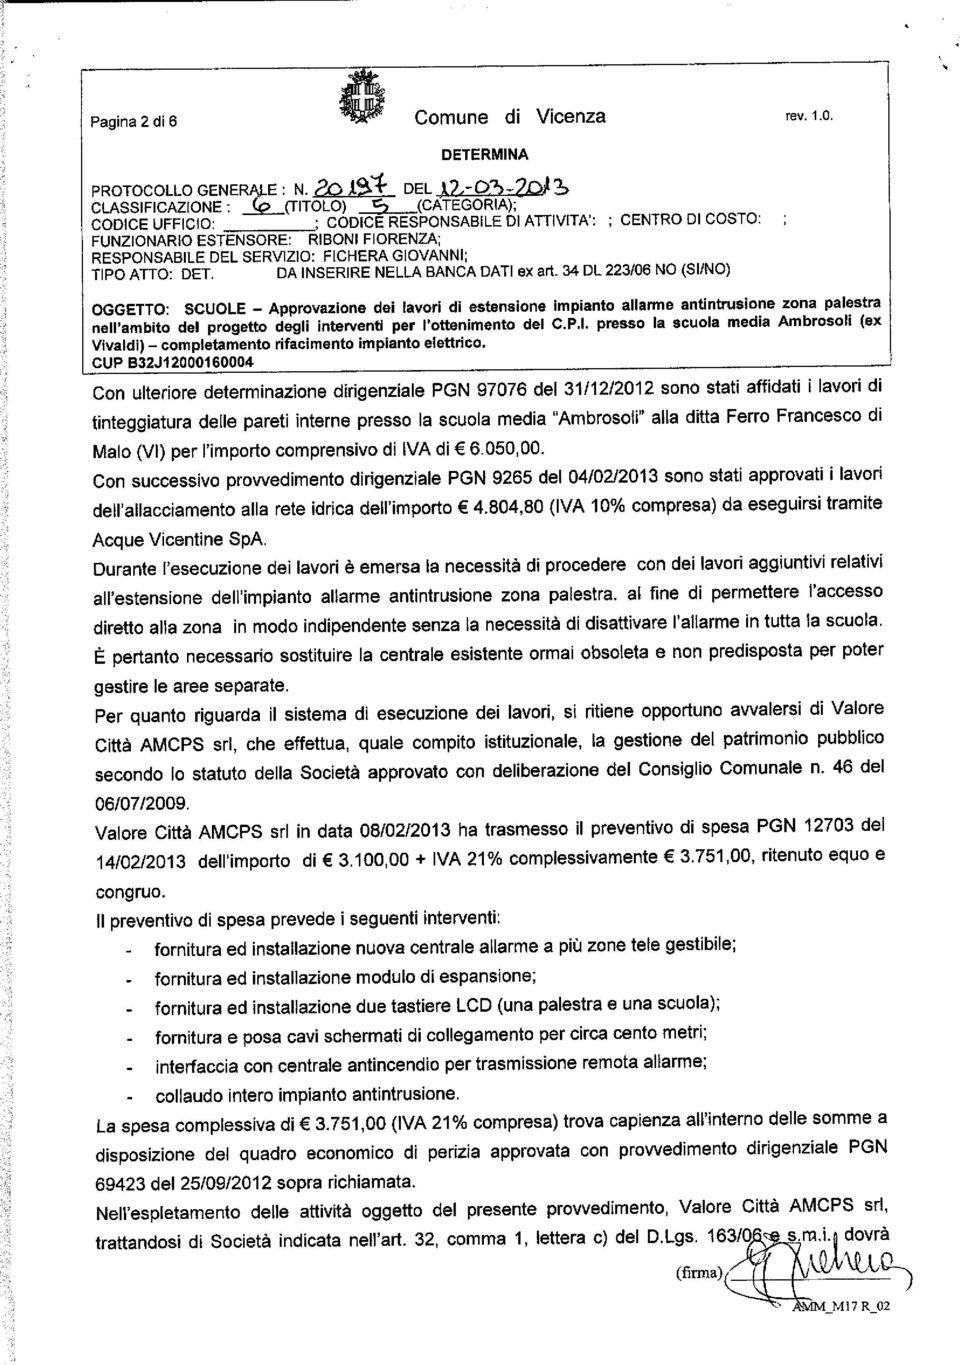 dirigenziale PGN 97076 del 31/12/2012 sono stati affidati i lavori di tinteggiatura delle pareti interne presso la scuola media "Ambrosoii" alla ditta Ferro Francesco di Maio (VI) per l'importo